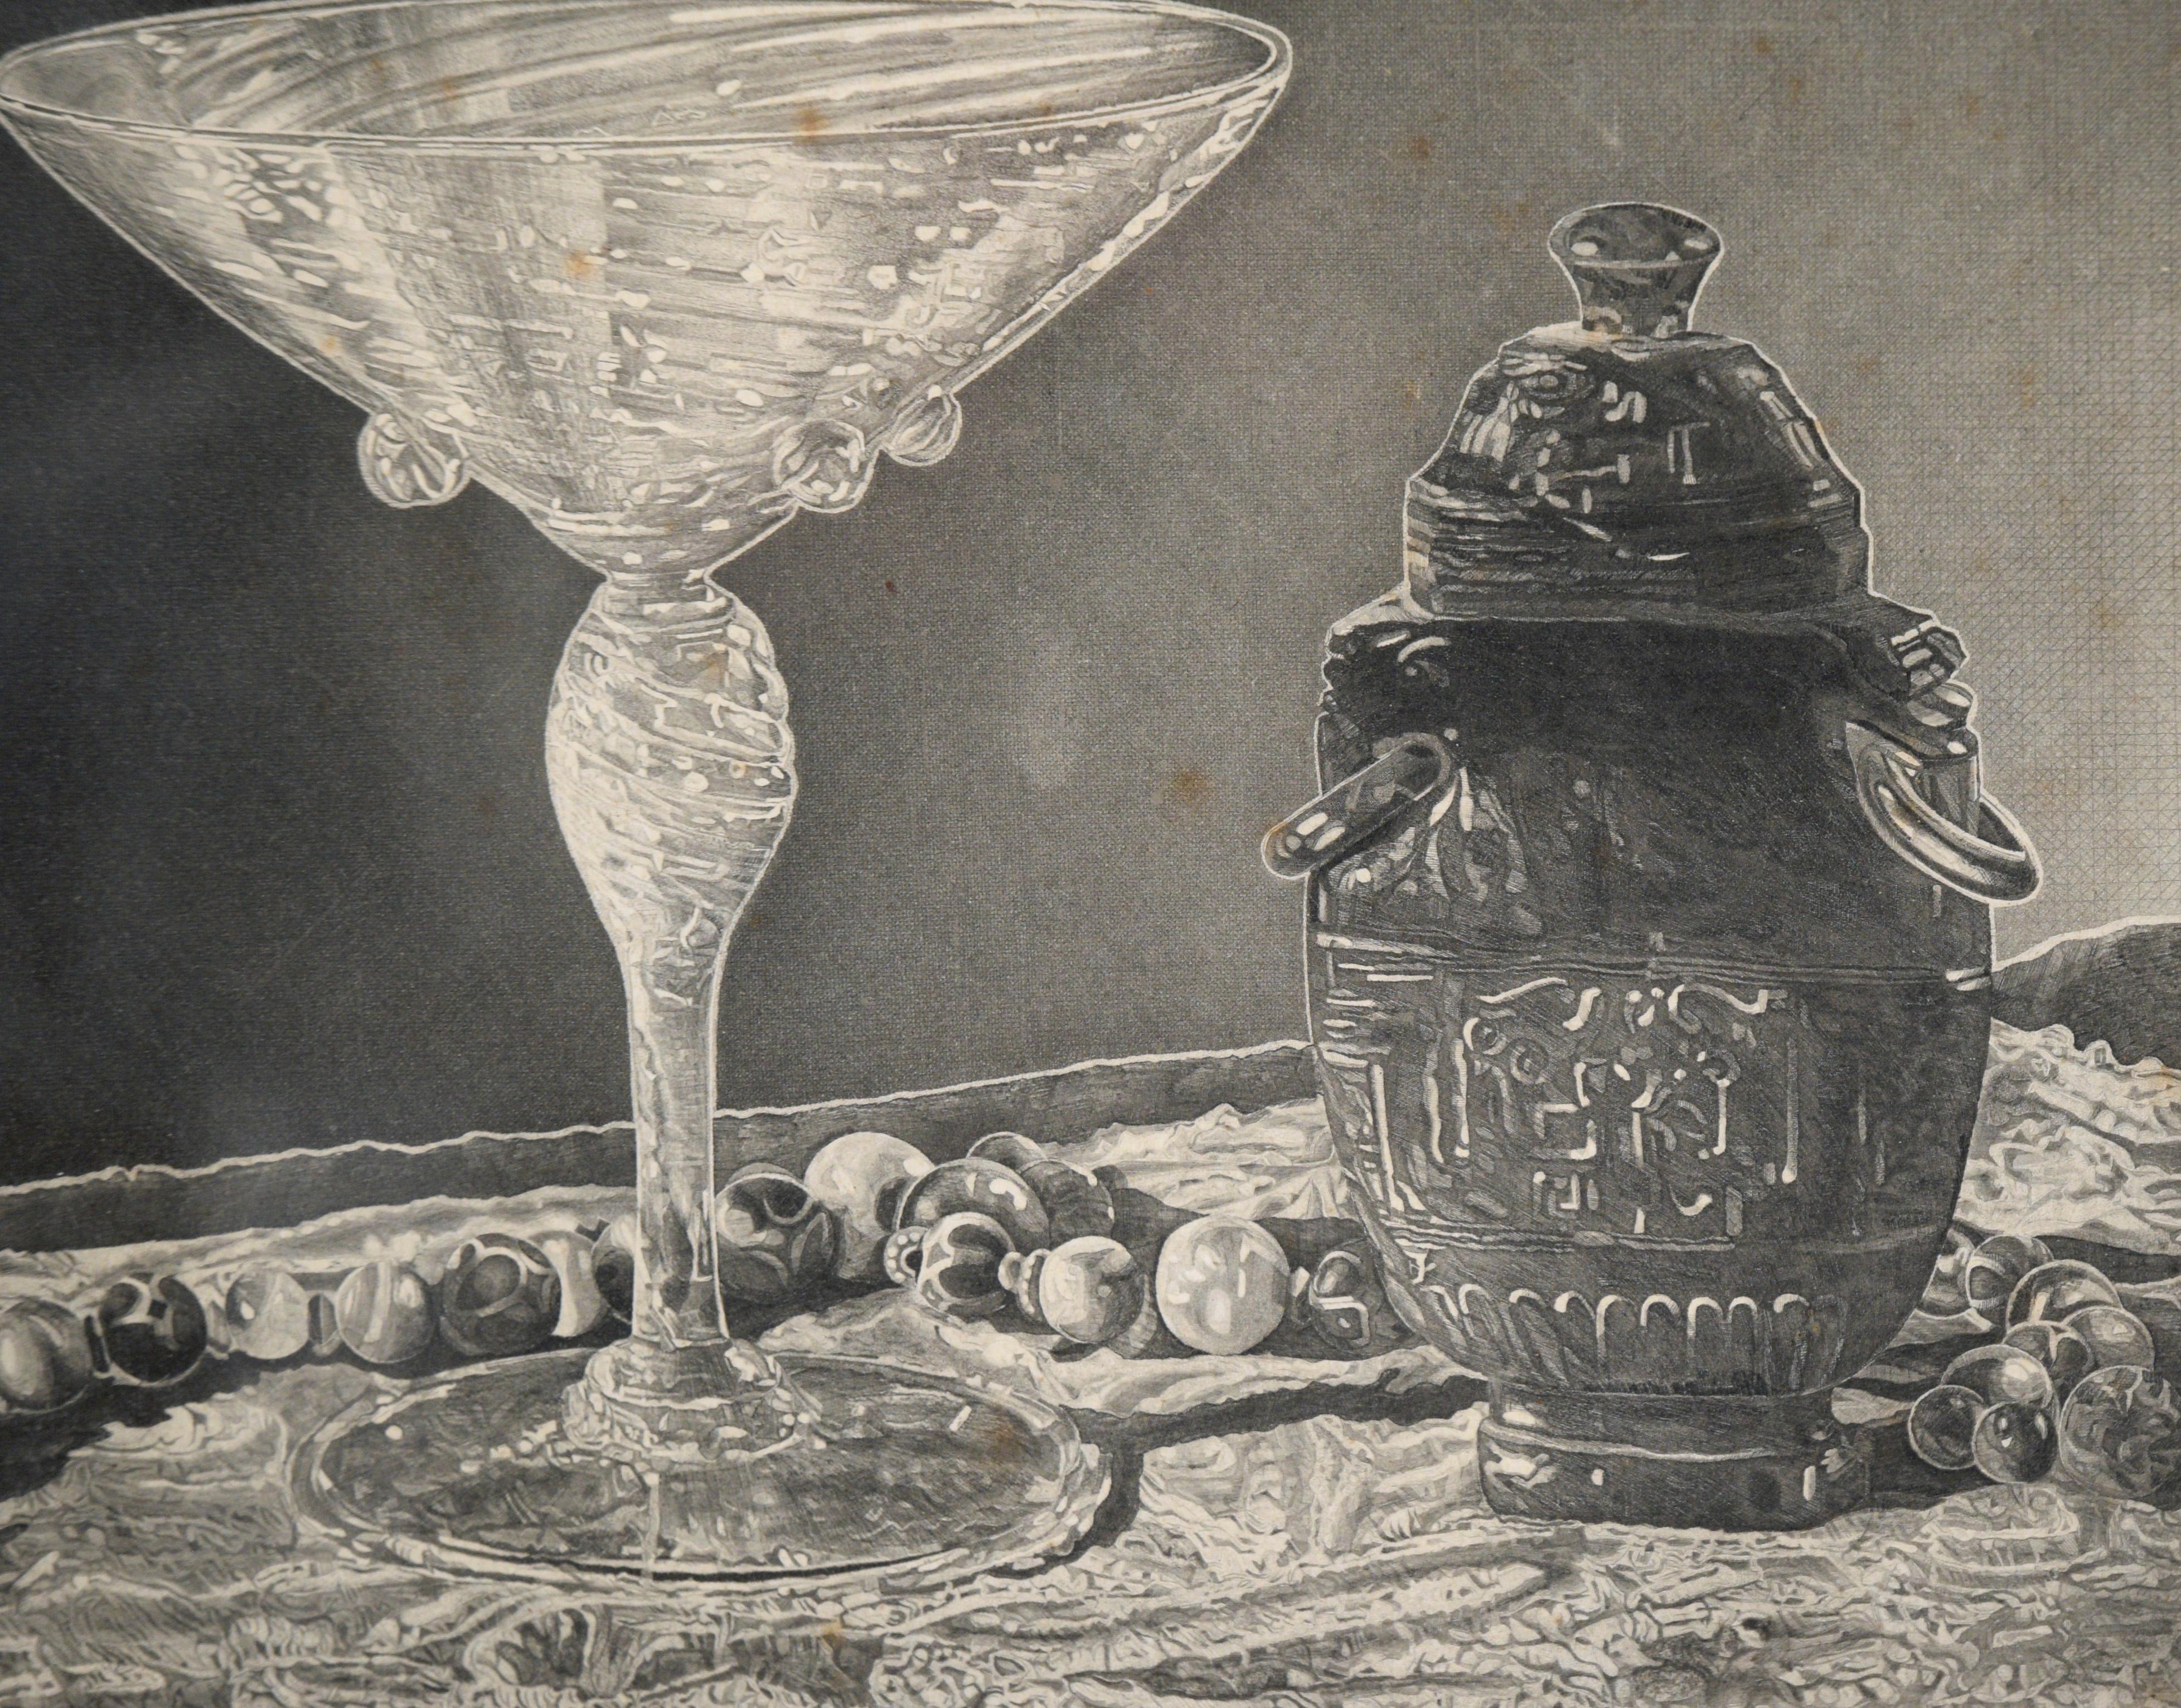 Stillleben-Lithographie „Kristall und Jade“ in Tinte auf Papier

Zarte und detaillierte Lithografie einer Vase aus Kristallglas und Jade von John Taylor Arms (Amerikaner, 1887-1953). Auf der linken Seite der Komposition befindet sich ein Martiniglas